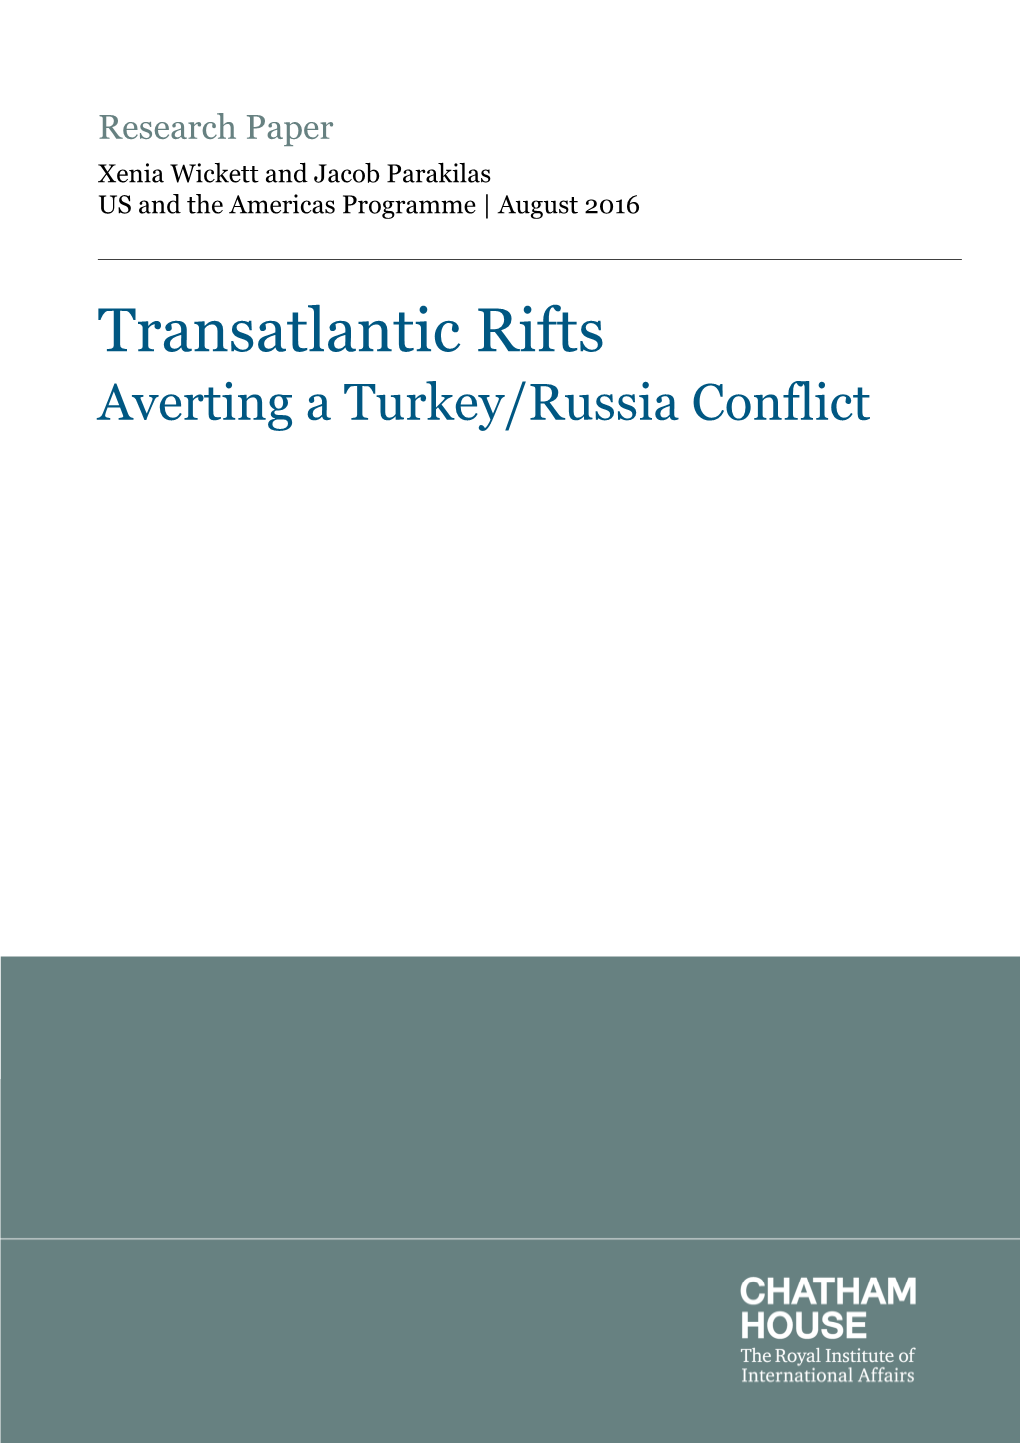 Turkey-Russia Scenario Paper Final